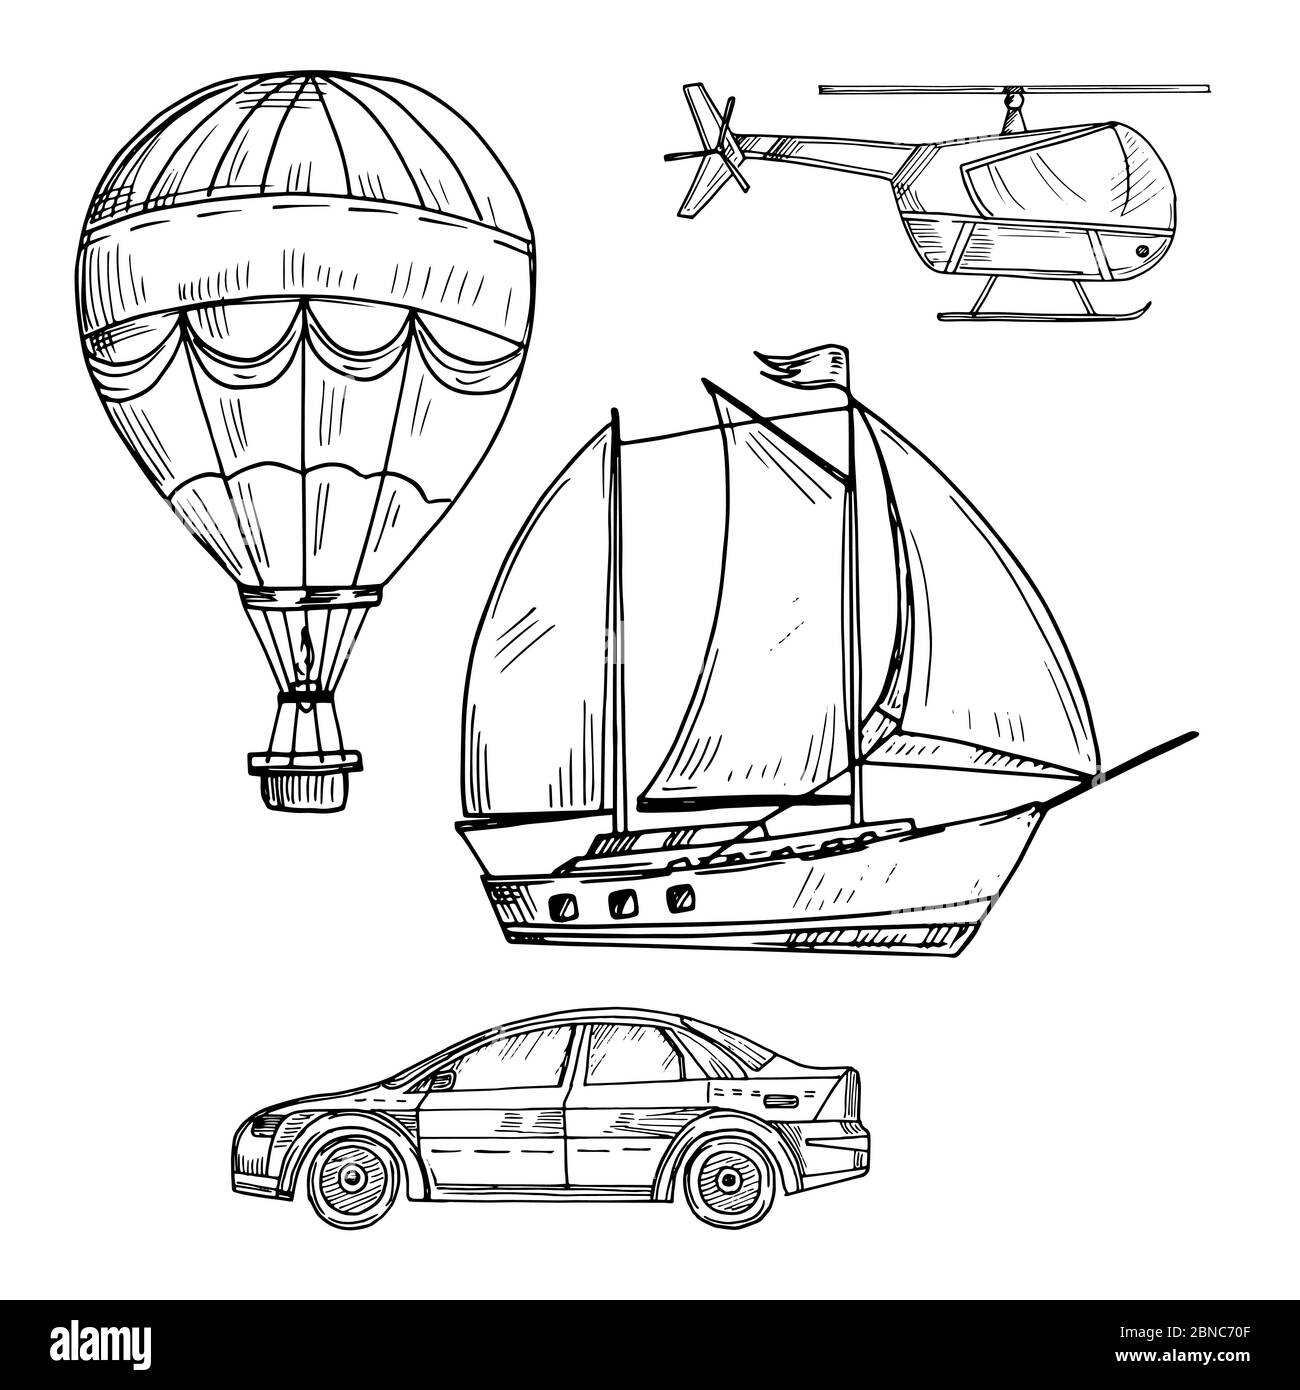 Disegno stile Doodle vettore di trasporto terrestre, aereo e marittimo immagine isolato su bianco Illustrazione Vettoriale